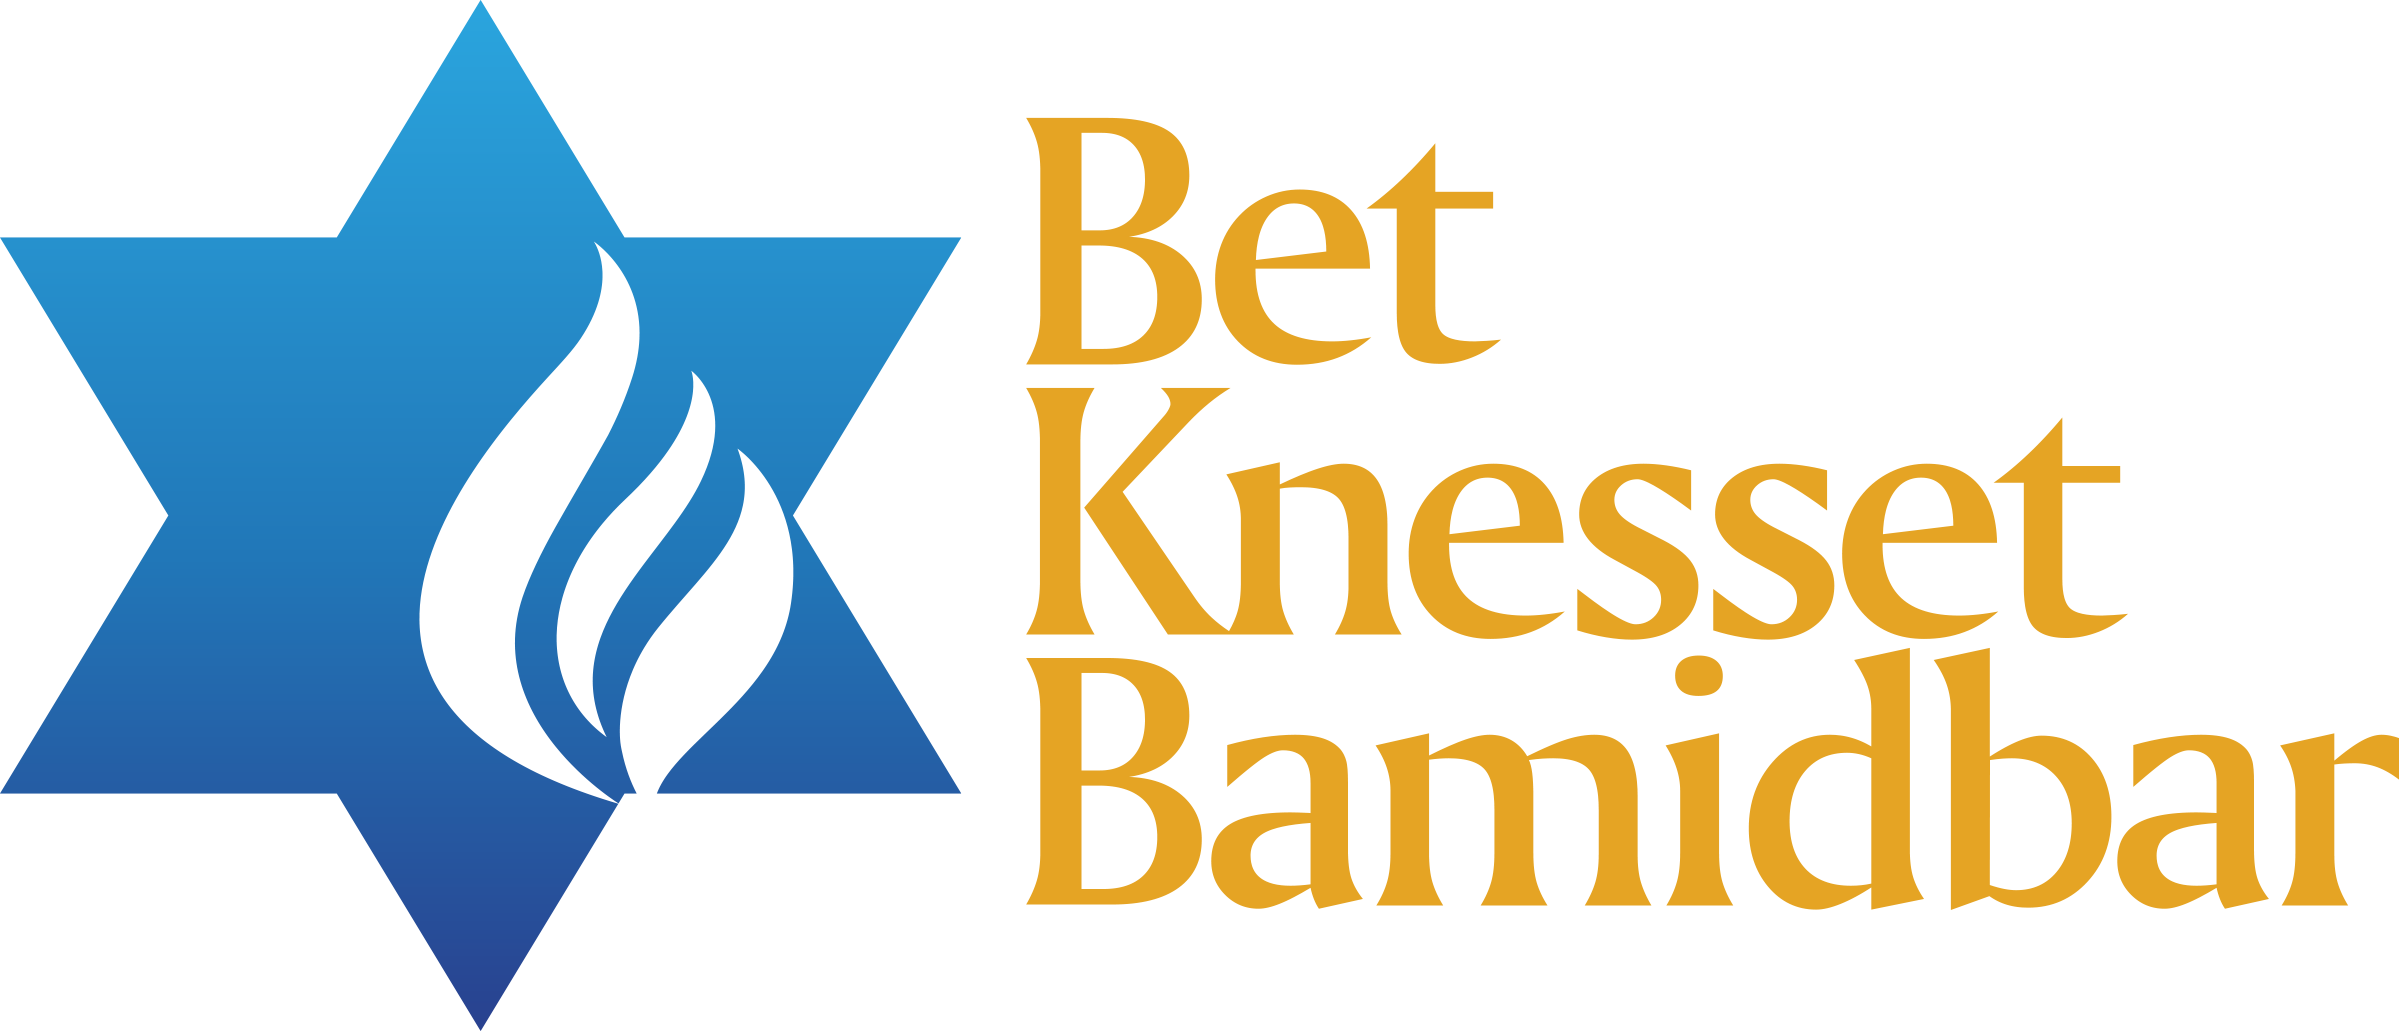 Bet Knesset Bamidbar